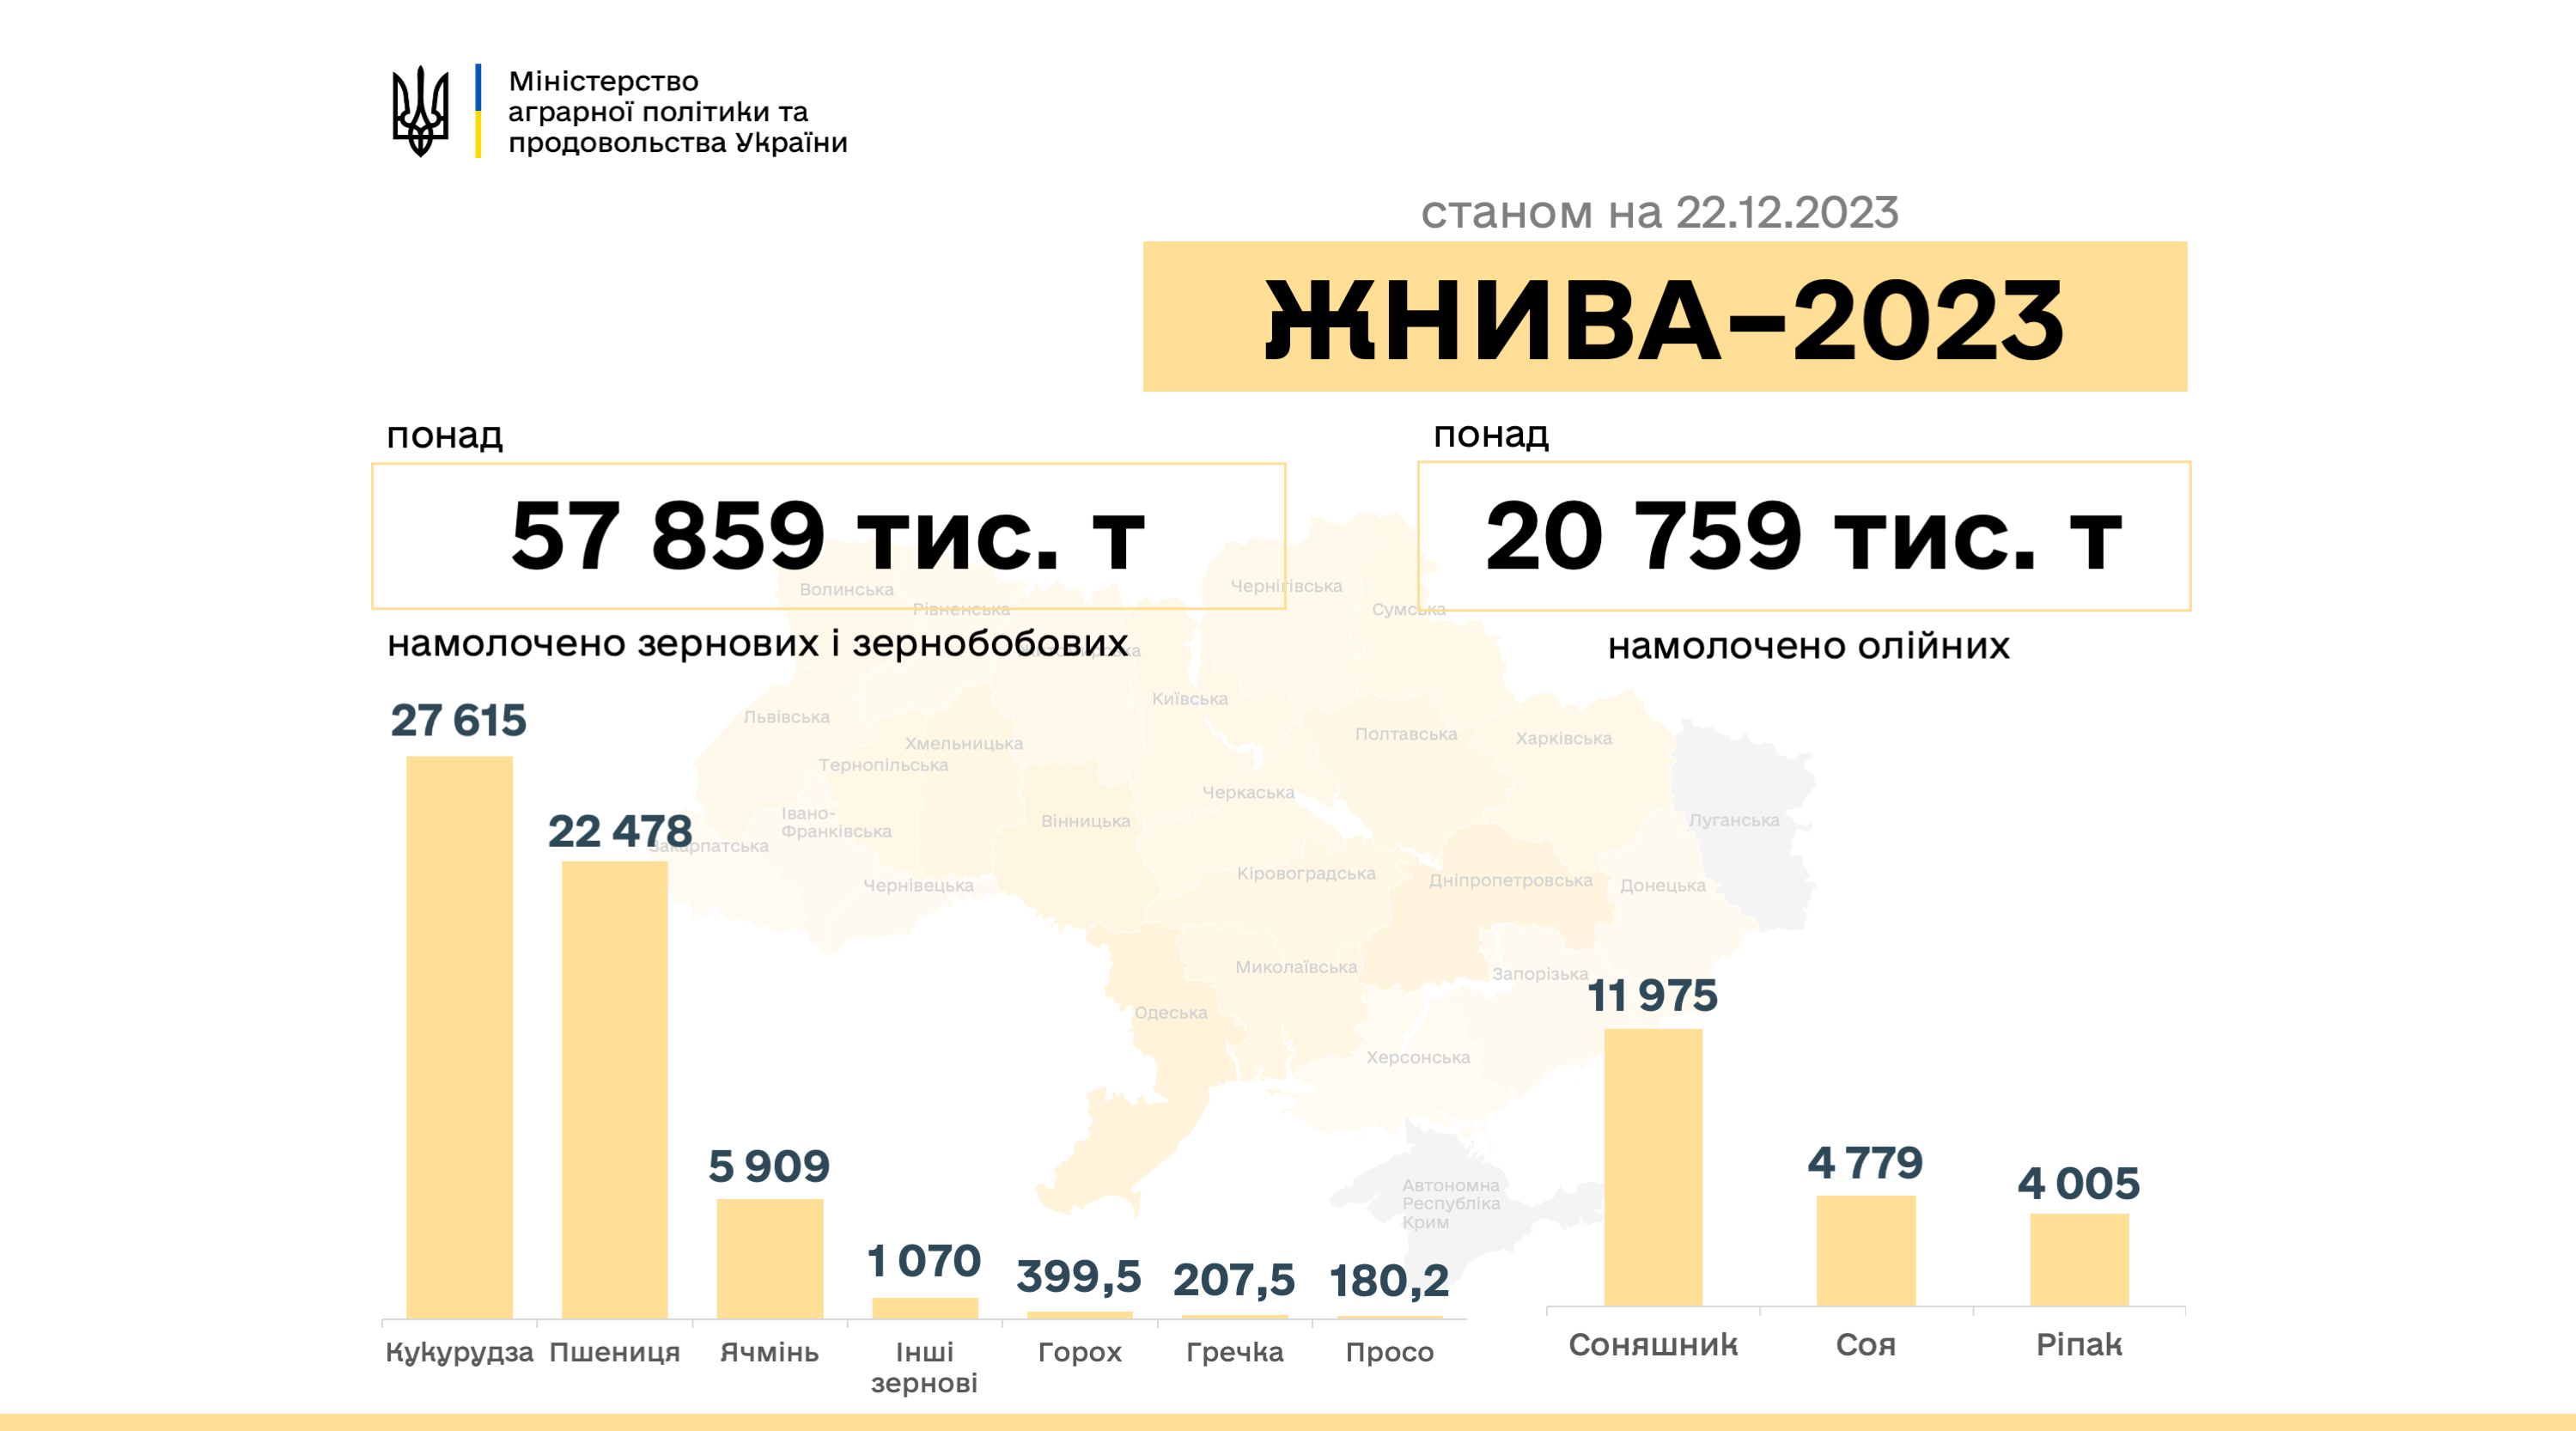 Фото Министерства аграрной политики и продовольствия Украины. В Украине намолочено 78,7 млн. тонн нового урожая.